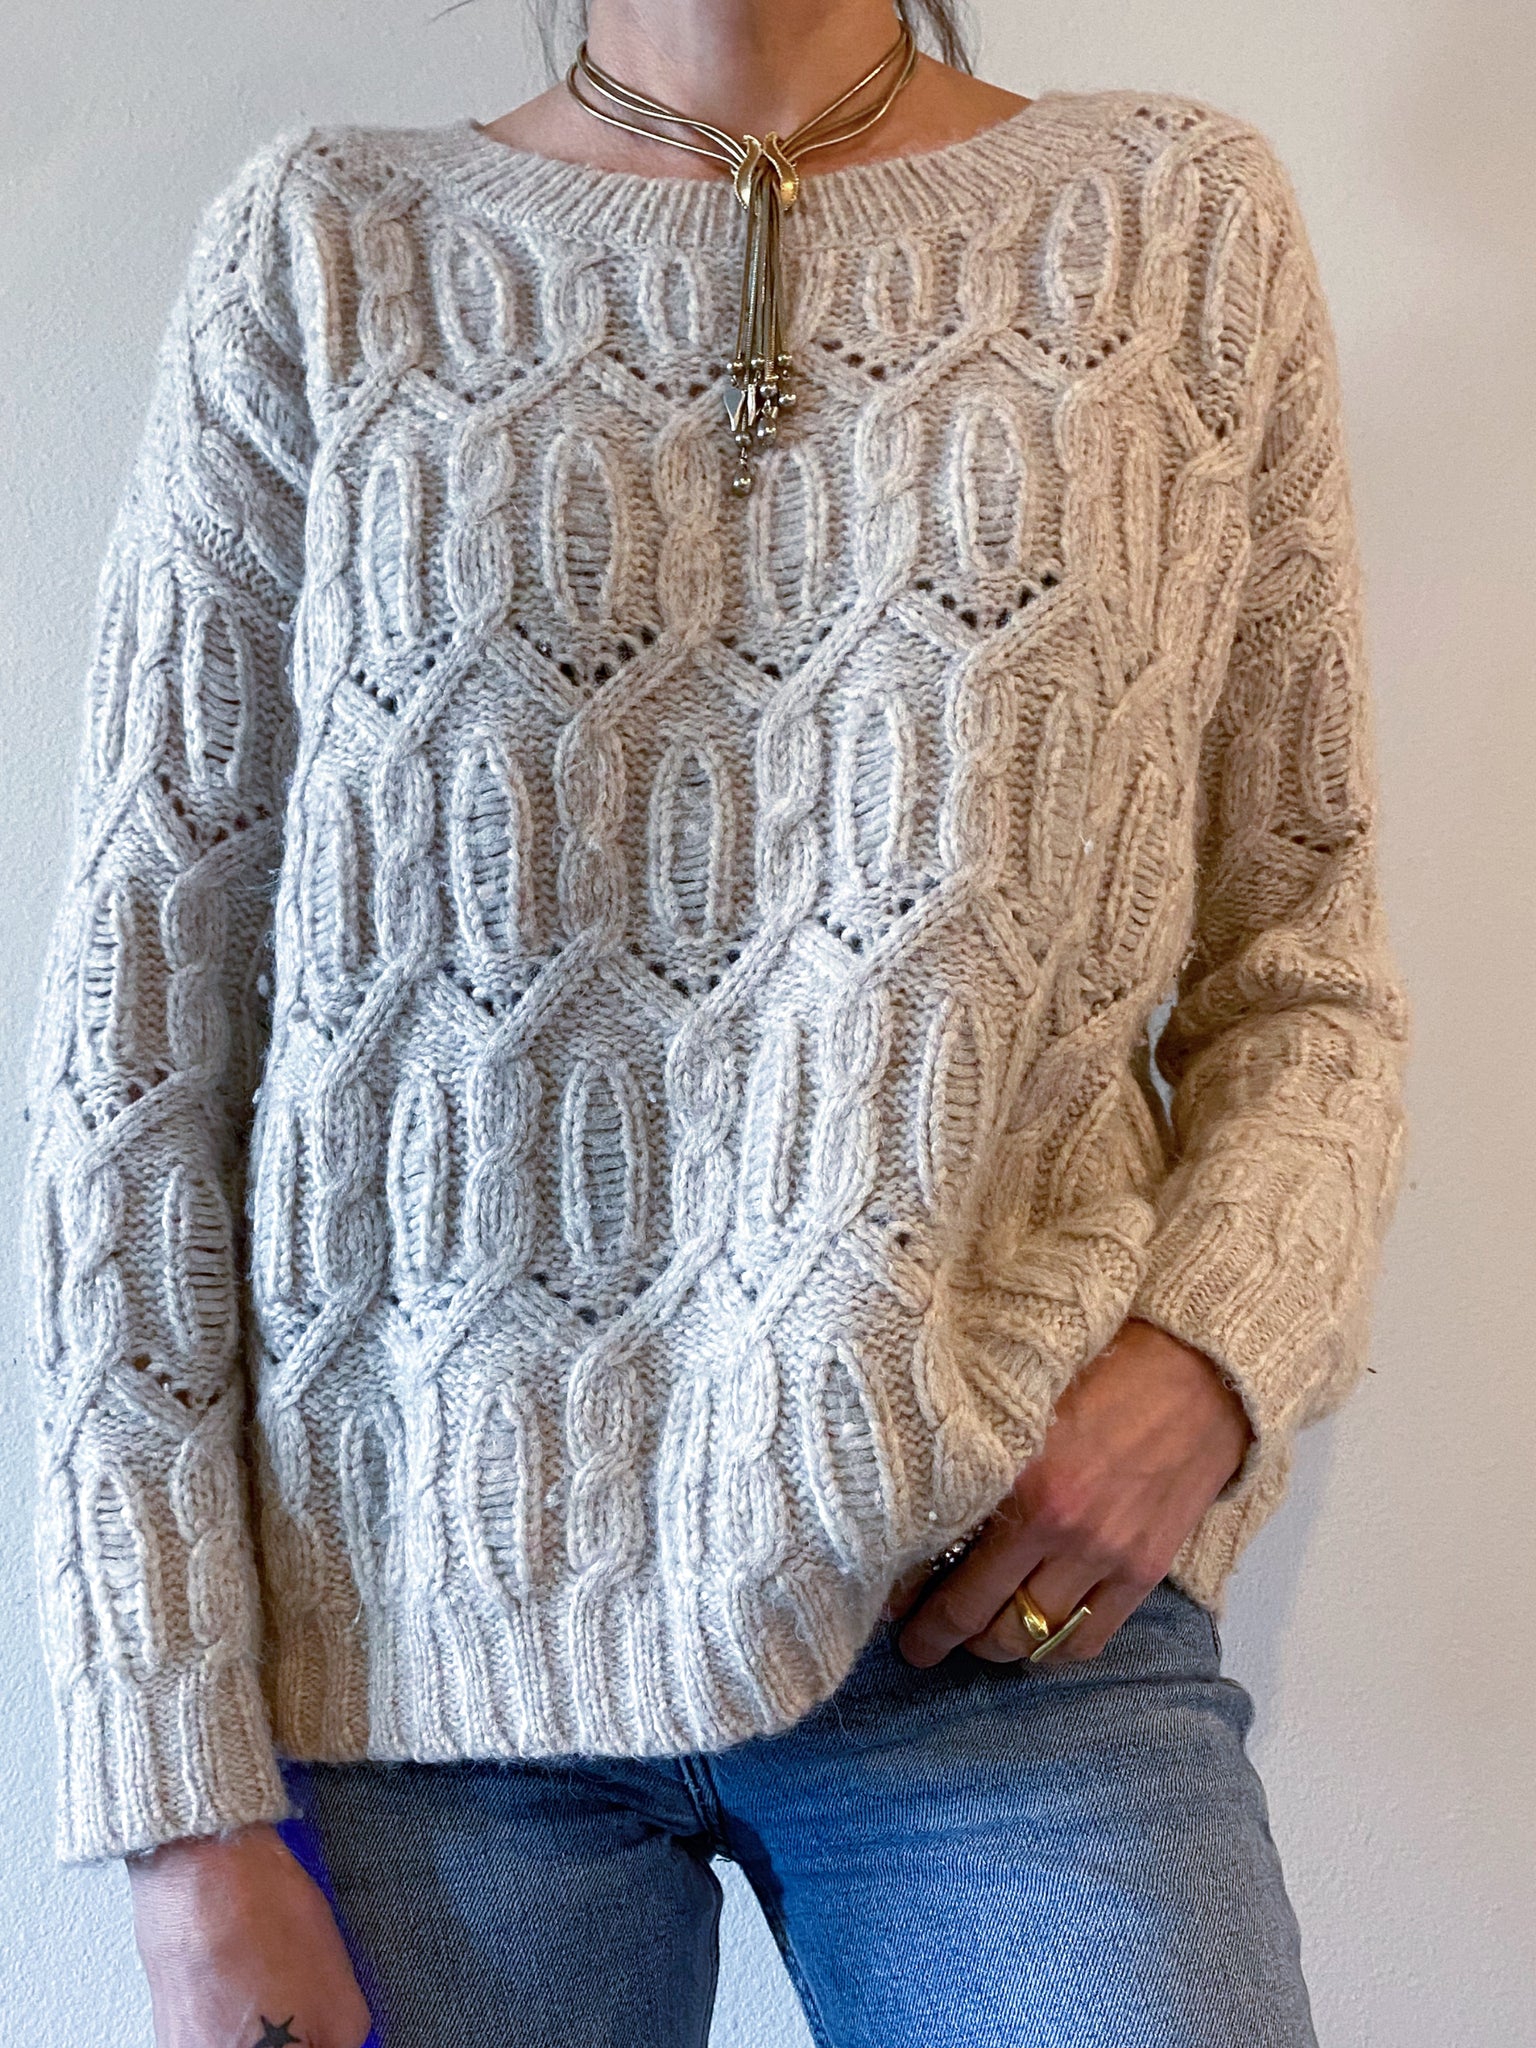 Nili Lotan Cashmere Sweater Small